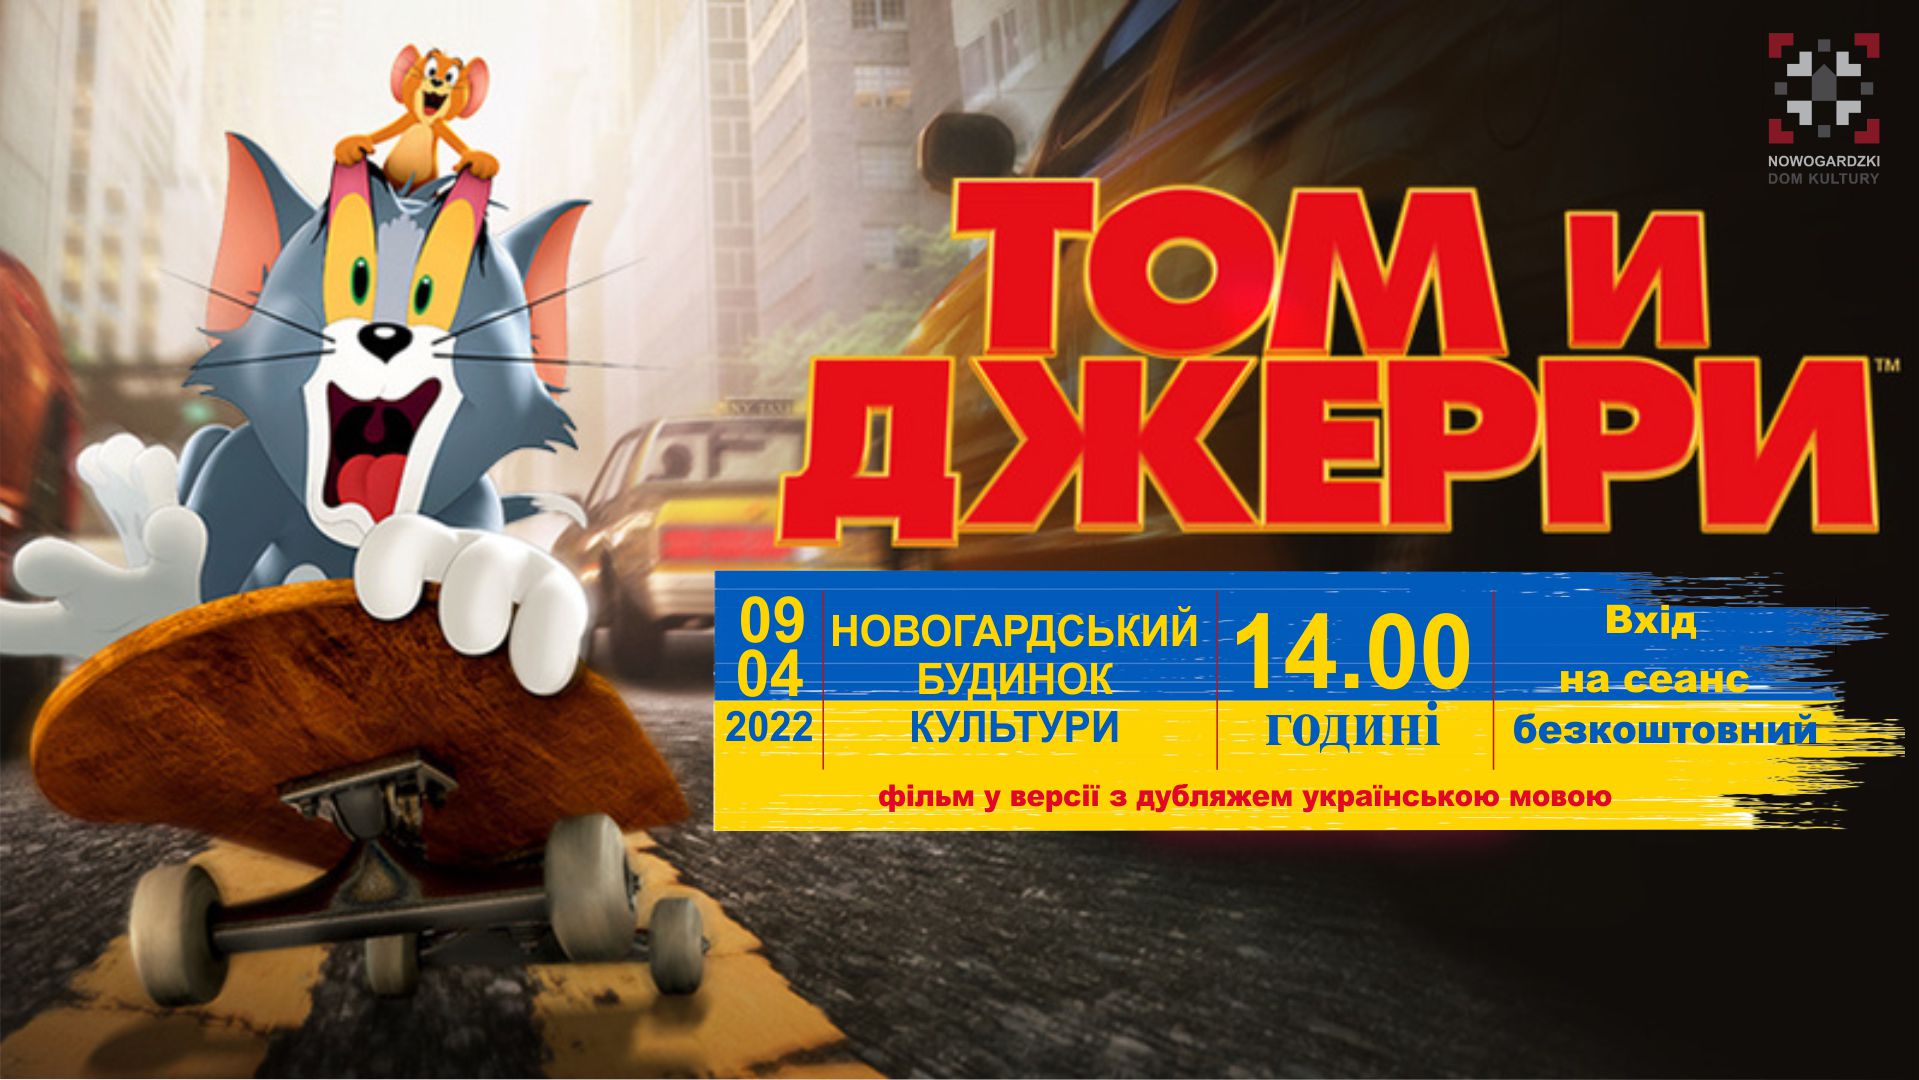 Безкоштовний показ фільму „том і Джеррі” | Tom i Jerry po ukraińsku!